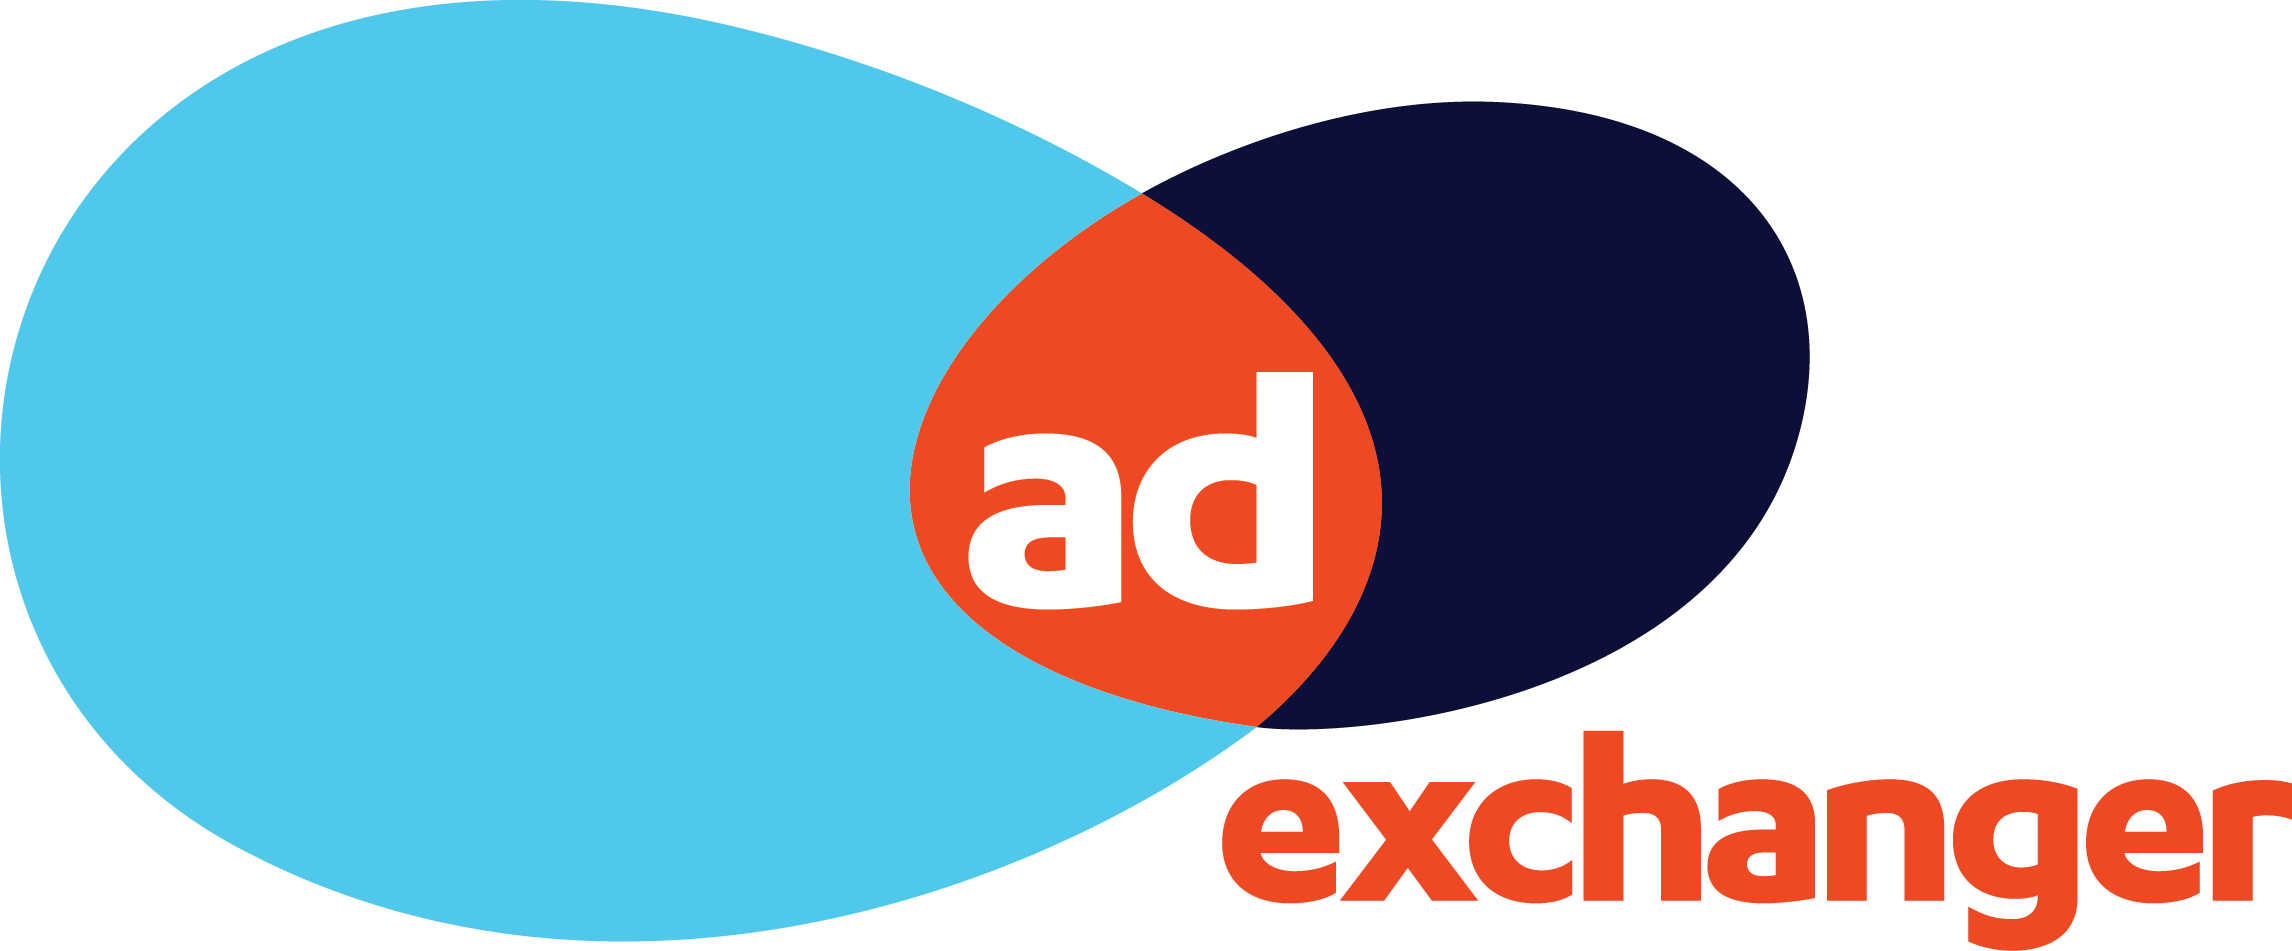 AdExchanger